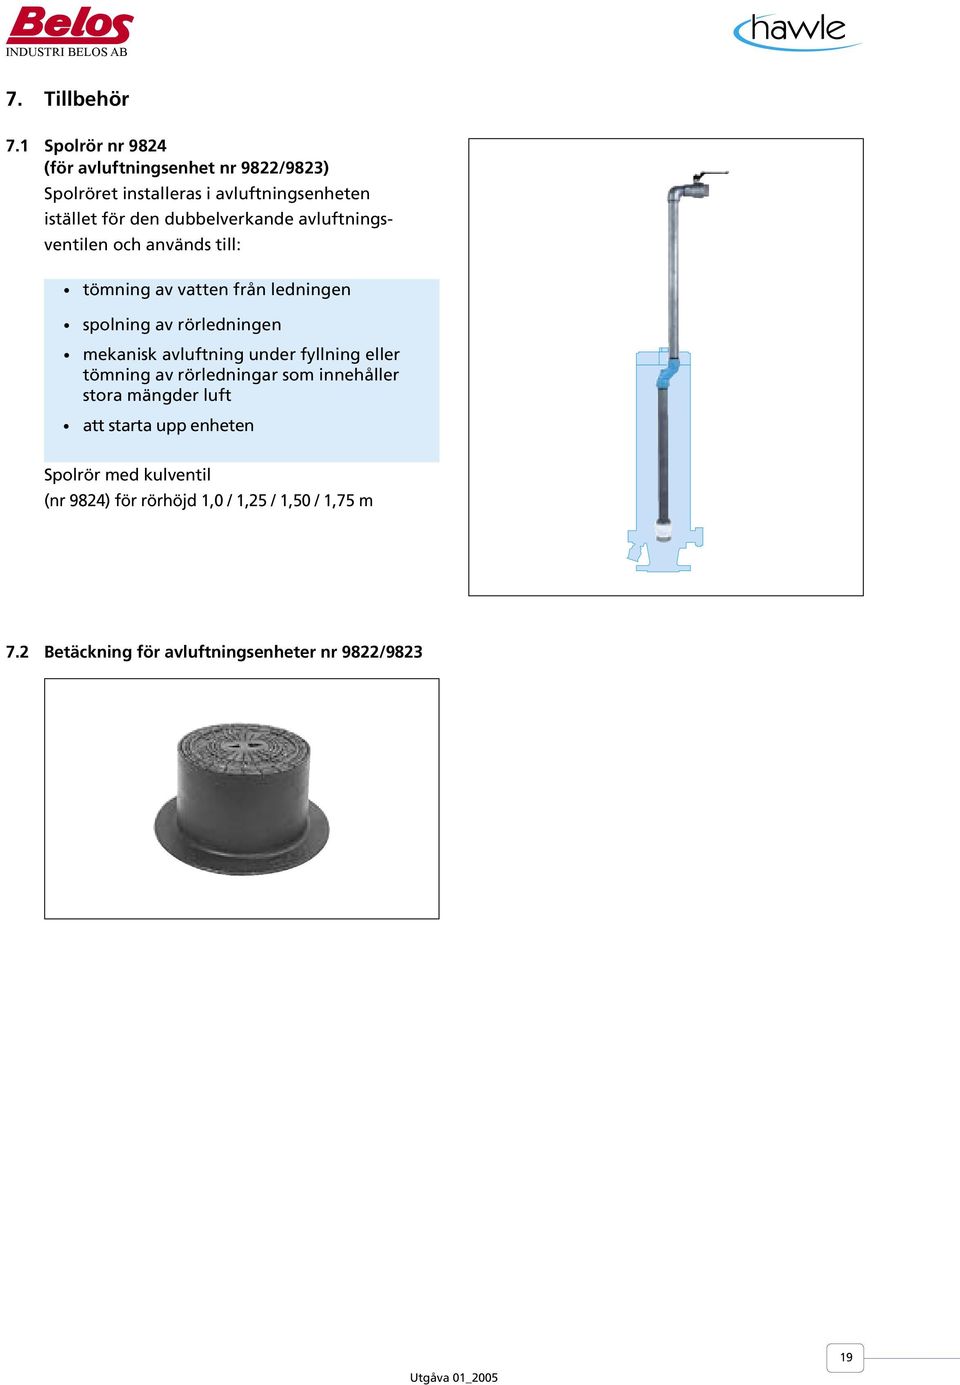 dubbelverkande avluftnings- ventilen och används till: tömning av vatten från ledningen spolning av rörledningen mekanisk